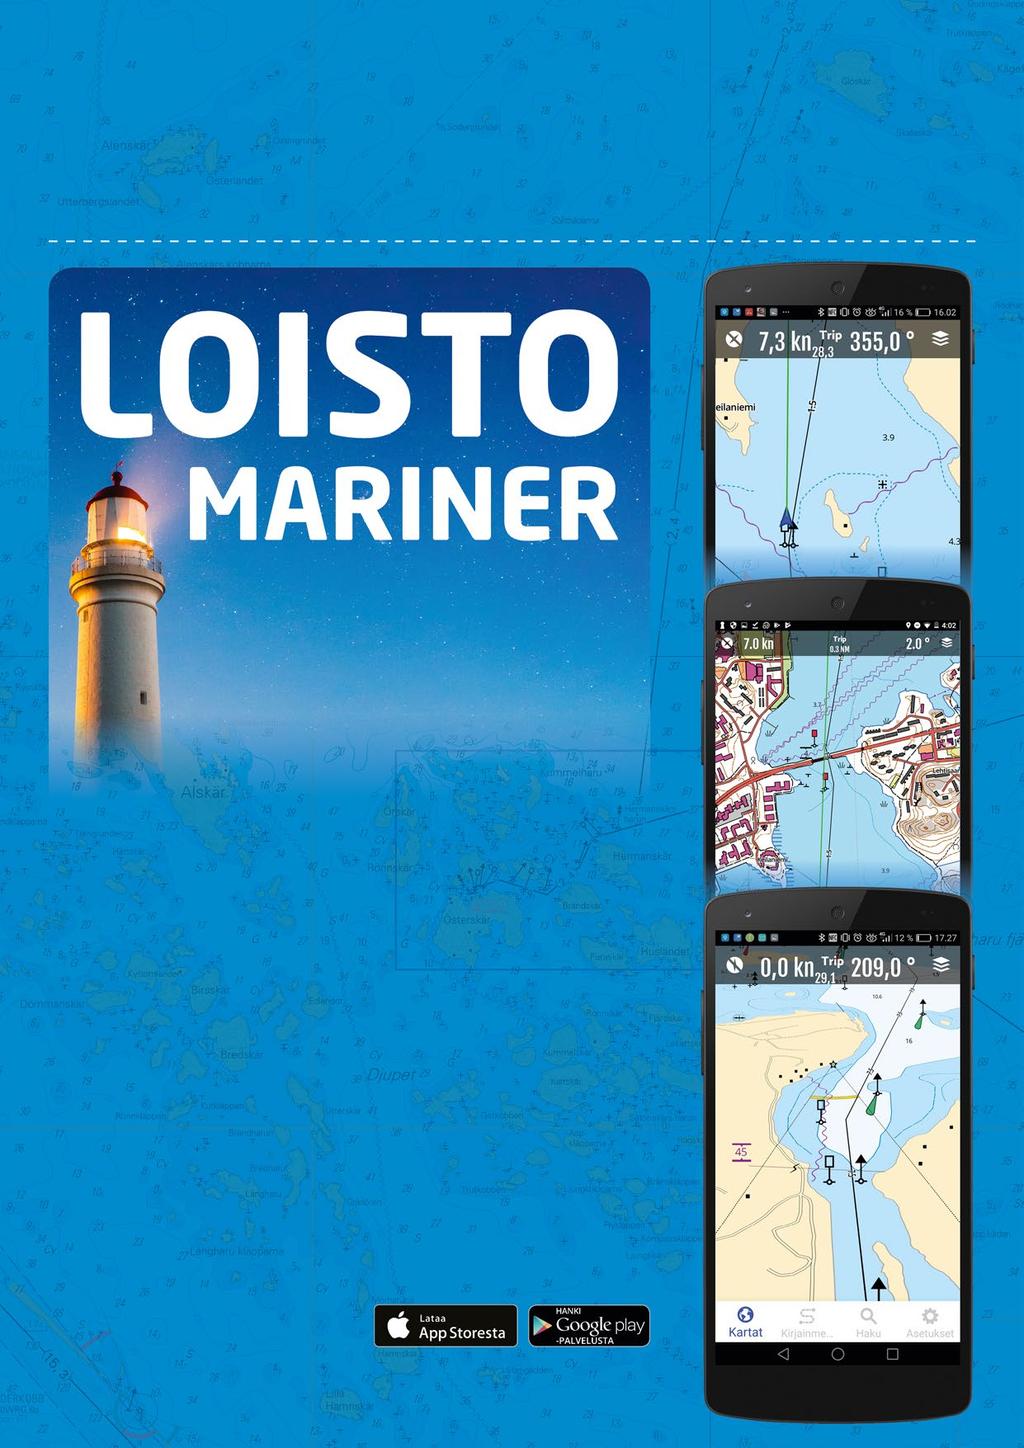 Loisto-ohjelmistot 32 Loisto navigointi- ja karttasovellukset vesille ja kaikkeen ulkoiluun!